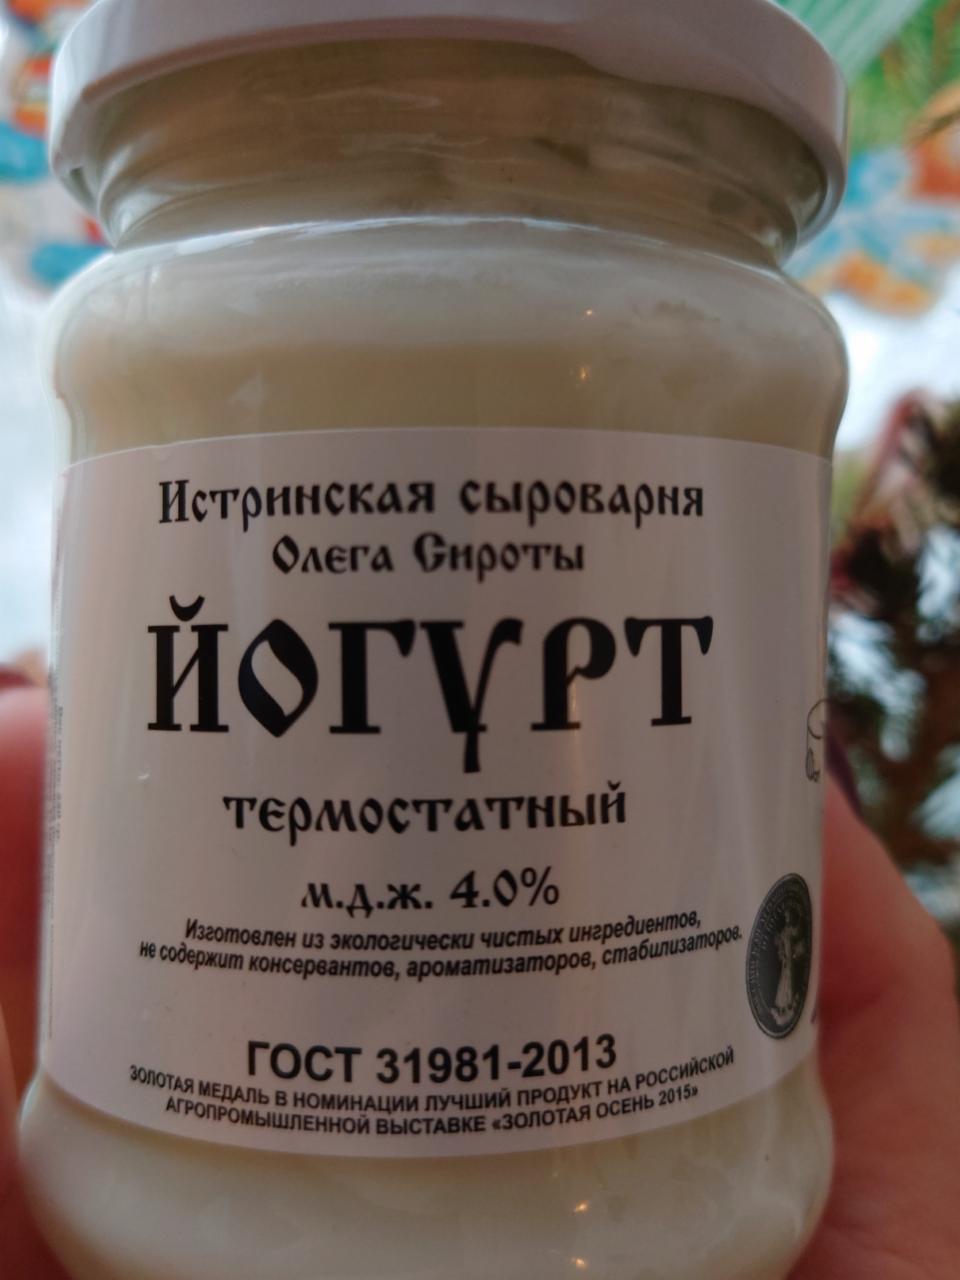 Фото - Йогурт термостатный 4% Истринская сыроварня от Олега Сироты